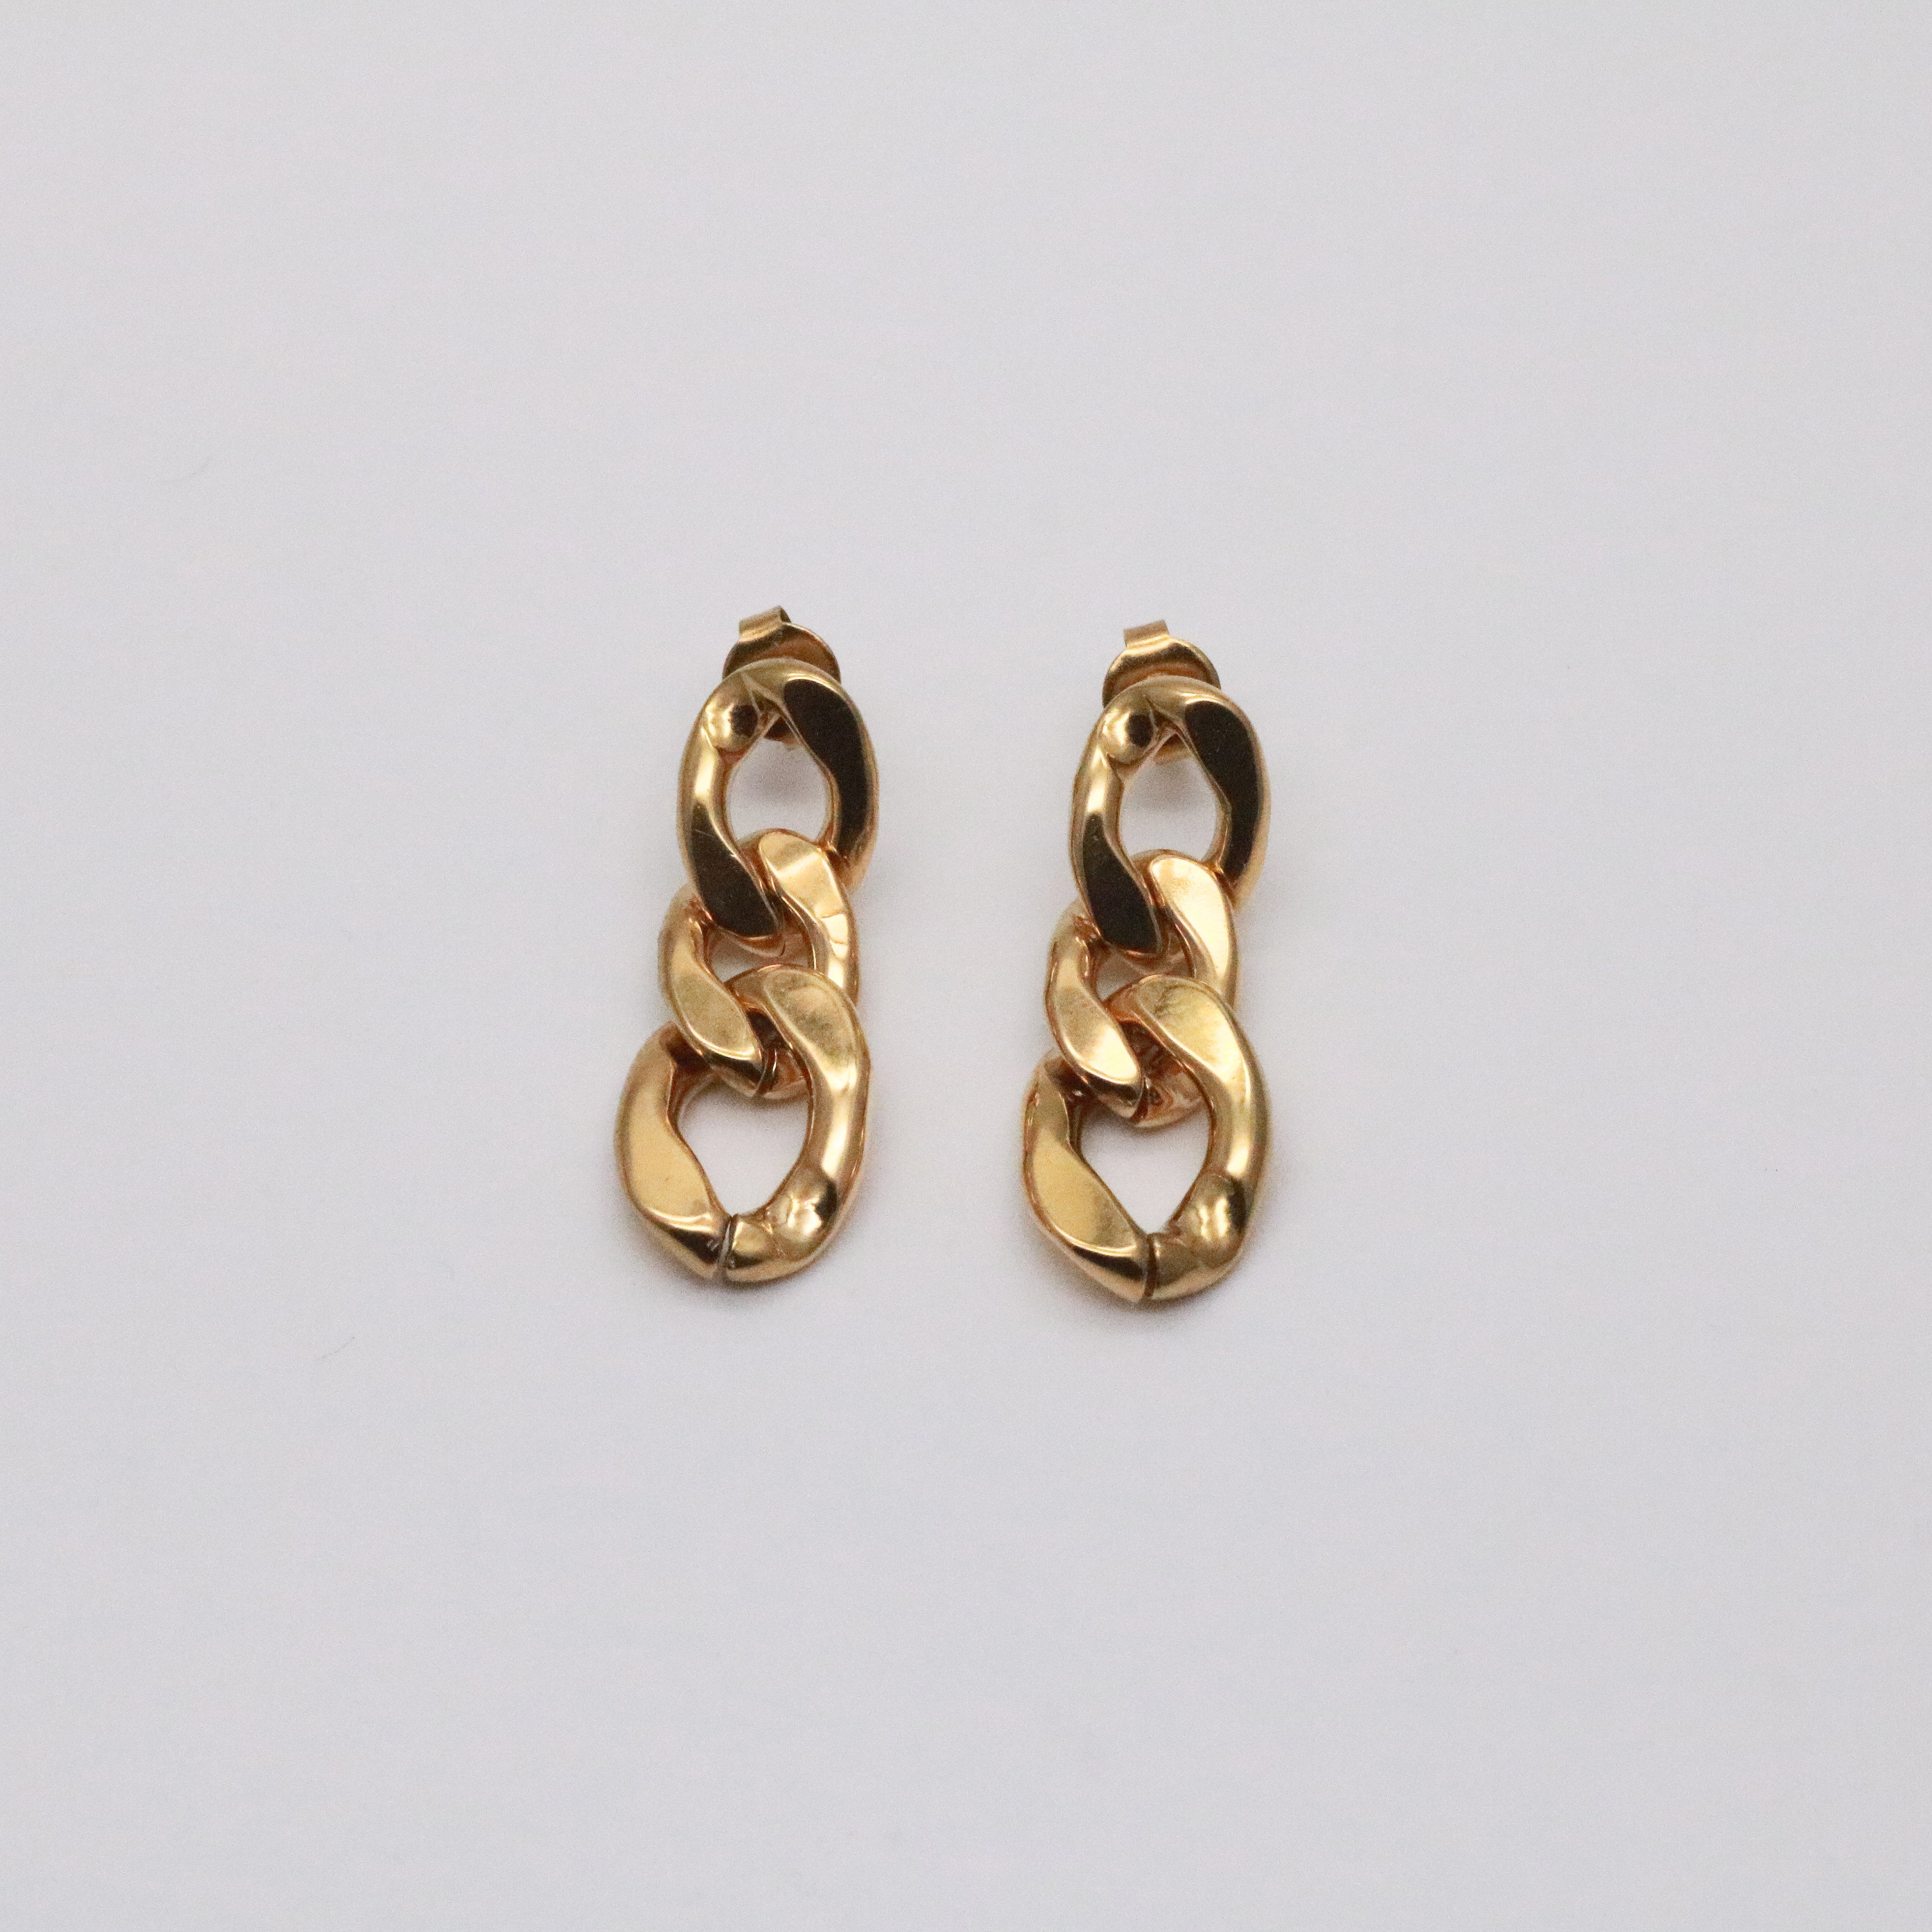 Meideya Jewelry - Adele Chain Sterling Silver Earrings